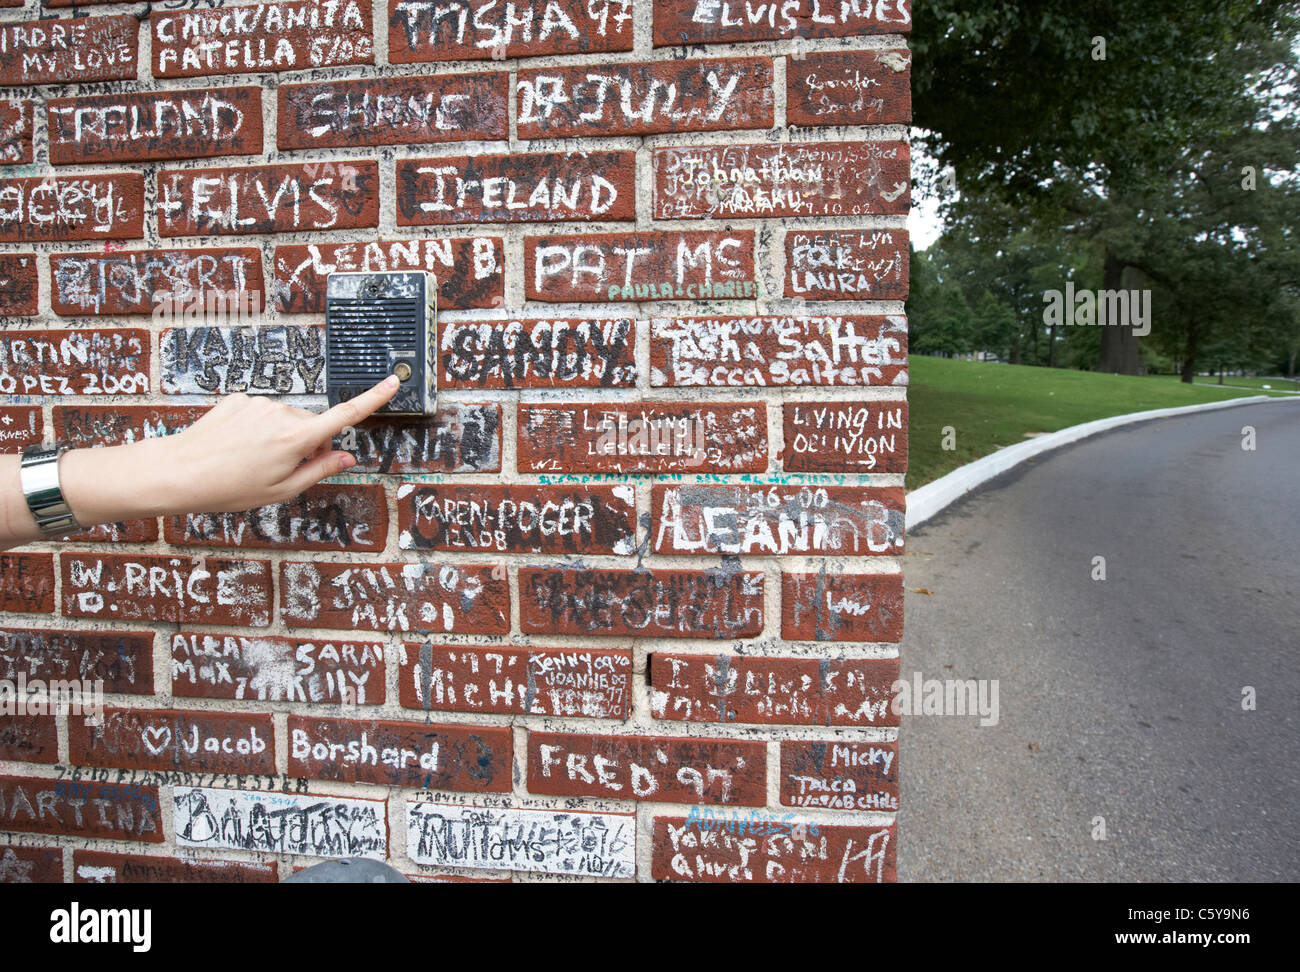 Womans spingendo a mano il vecchio pulsante interfono su muro coperto di graffiti al di fuori di Graceland Memphis, Tennessee, Stati Uniti d'America Foto Stock